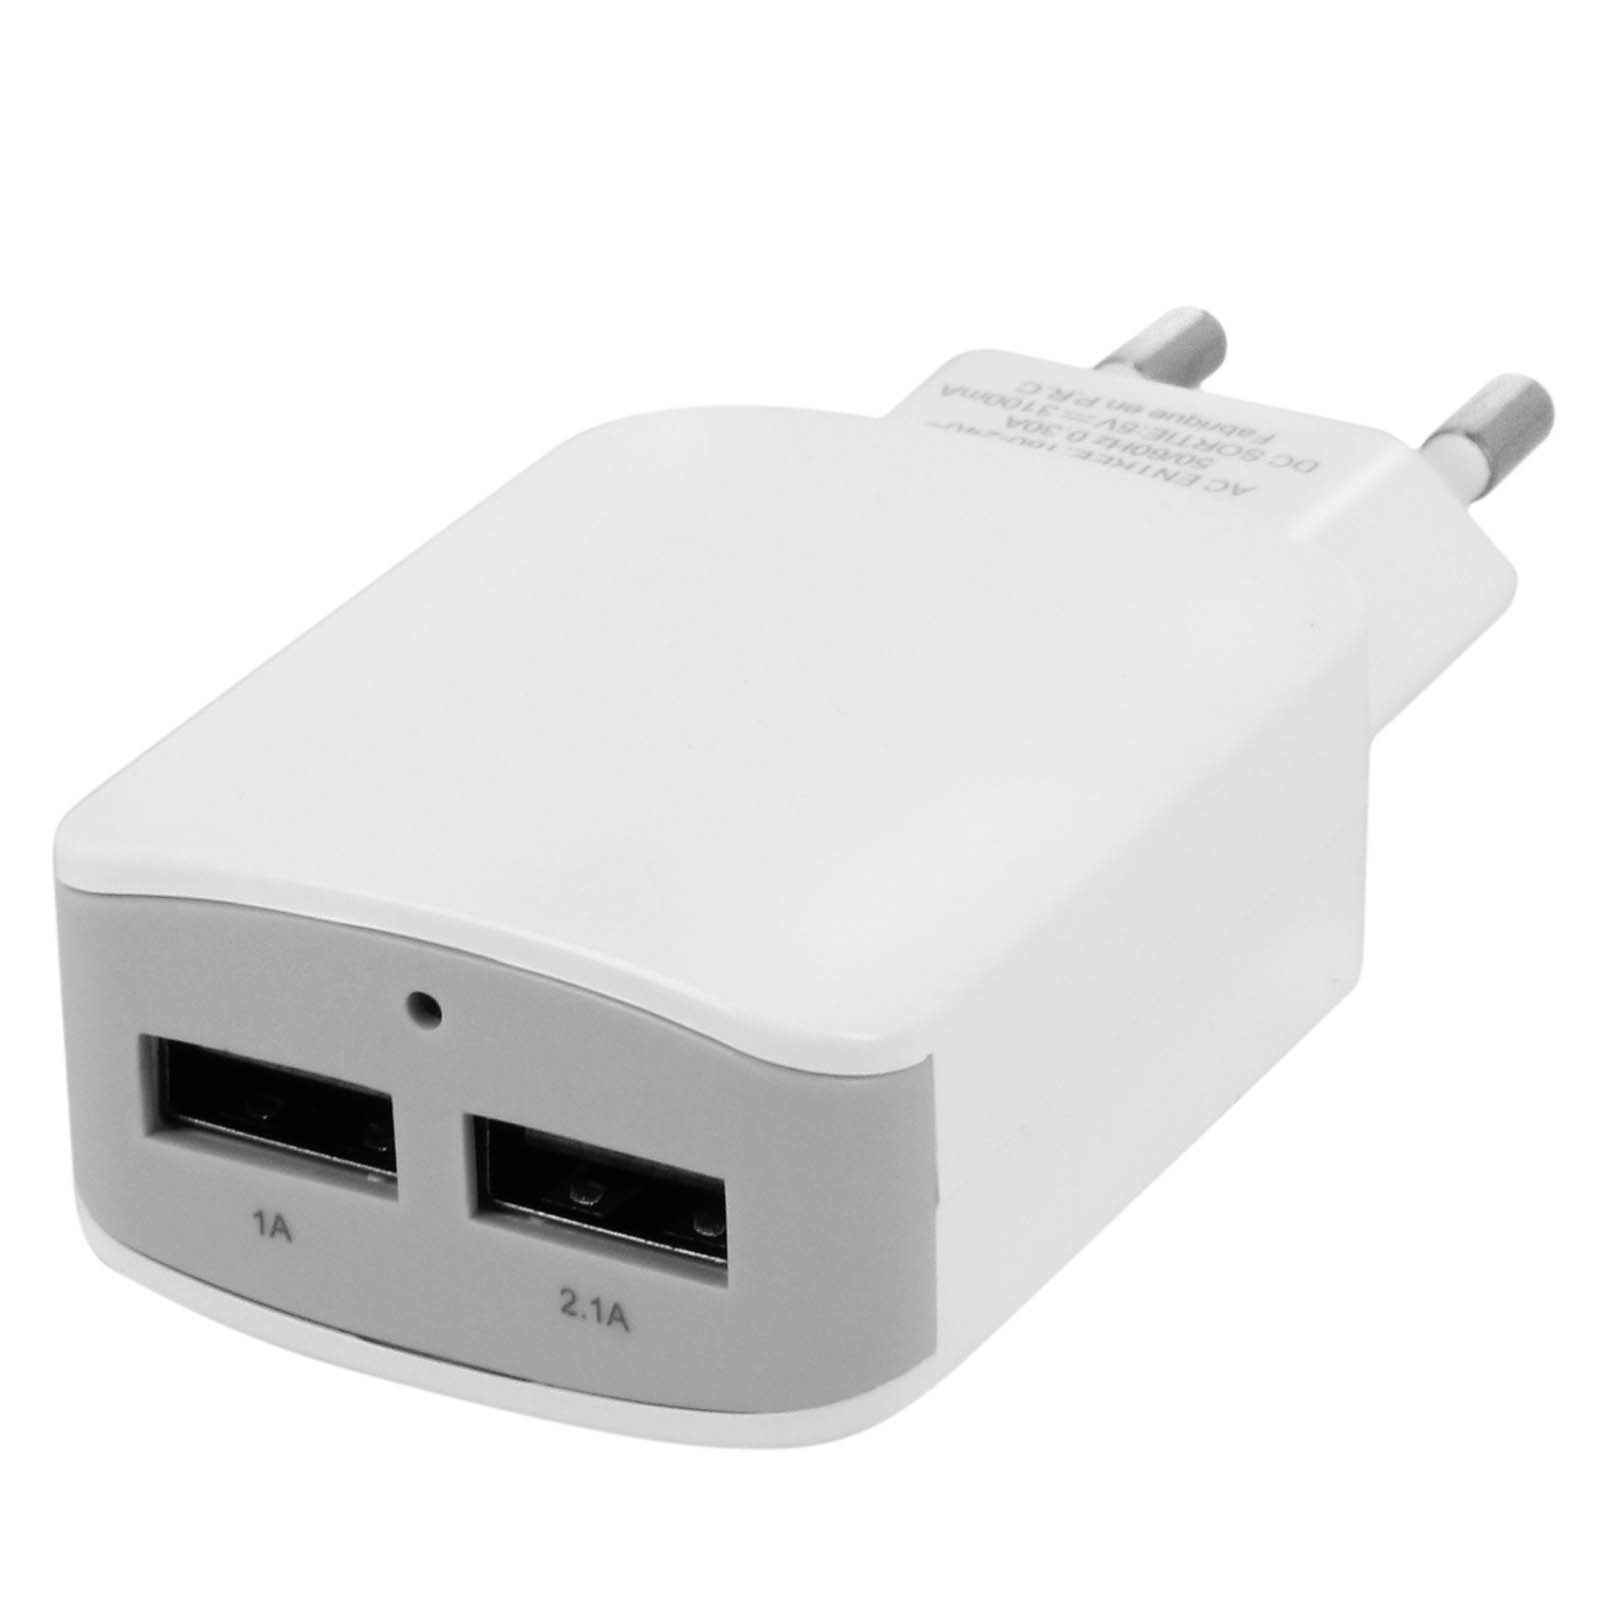 AVIZAR Netzteil, 3.1A USB Netzteile Wand-Ladegerät Universal, Weiß